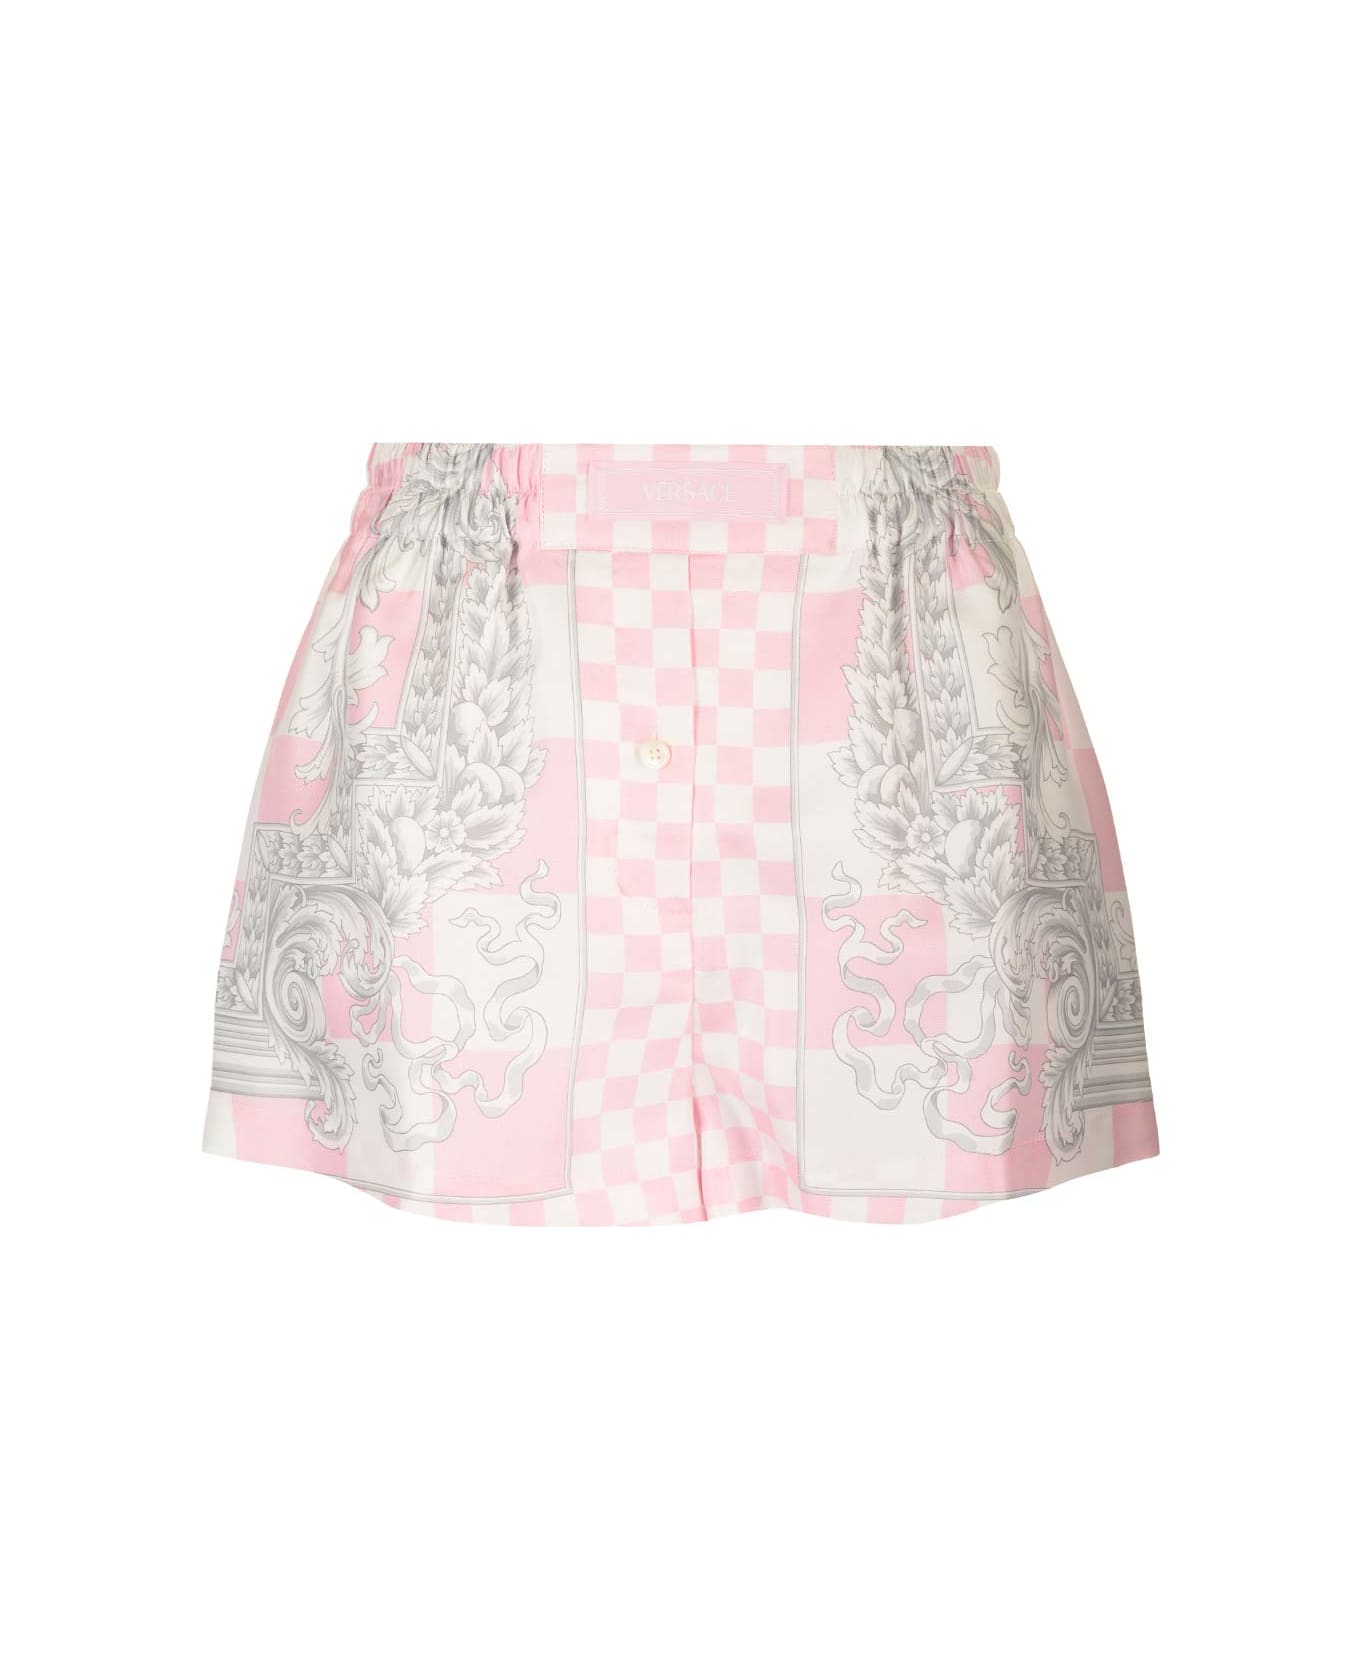 Versace Silk Duchesse Shorts - Pink